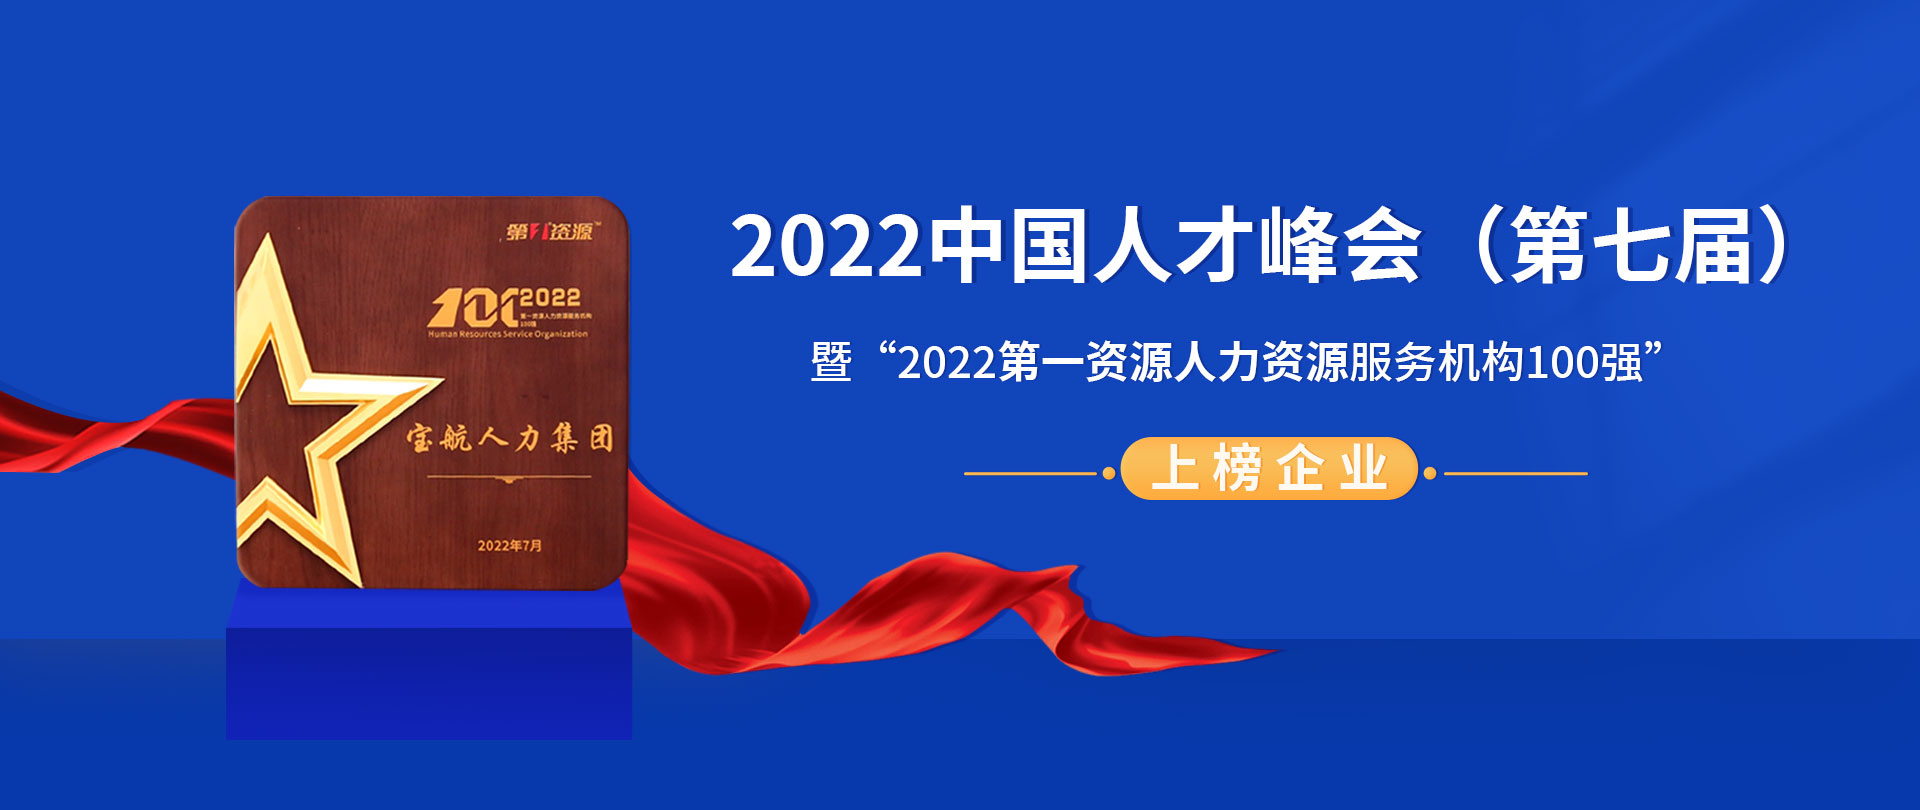 2022中(zhōng)國(guó)人(rén)才峰會(huì)（第七屆）暨“2022第一(yī)資源人(rén)力資源服務機構100強”